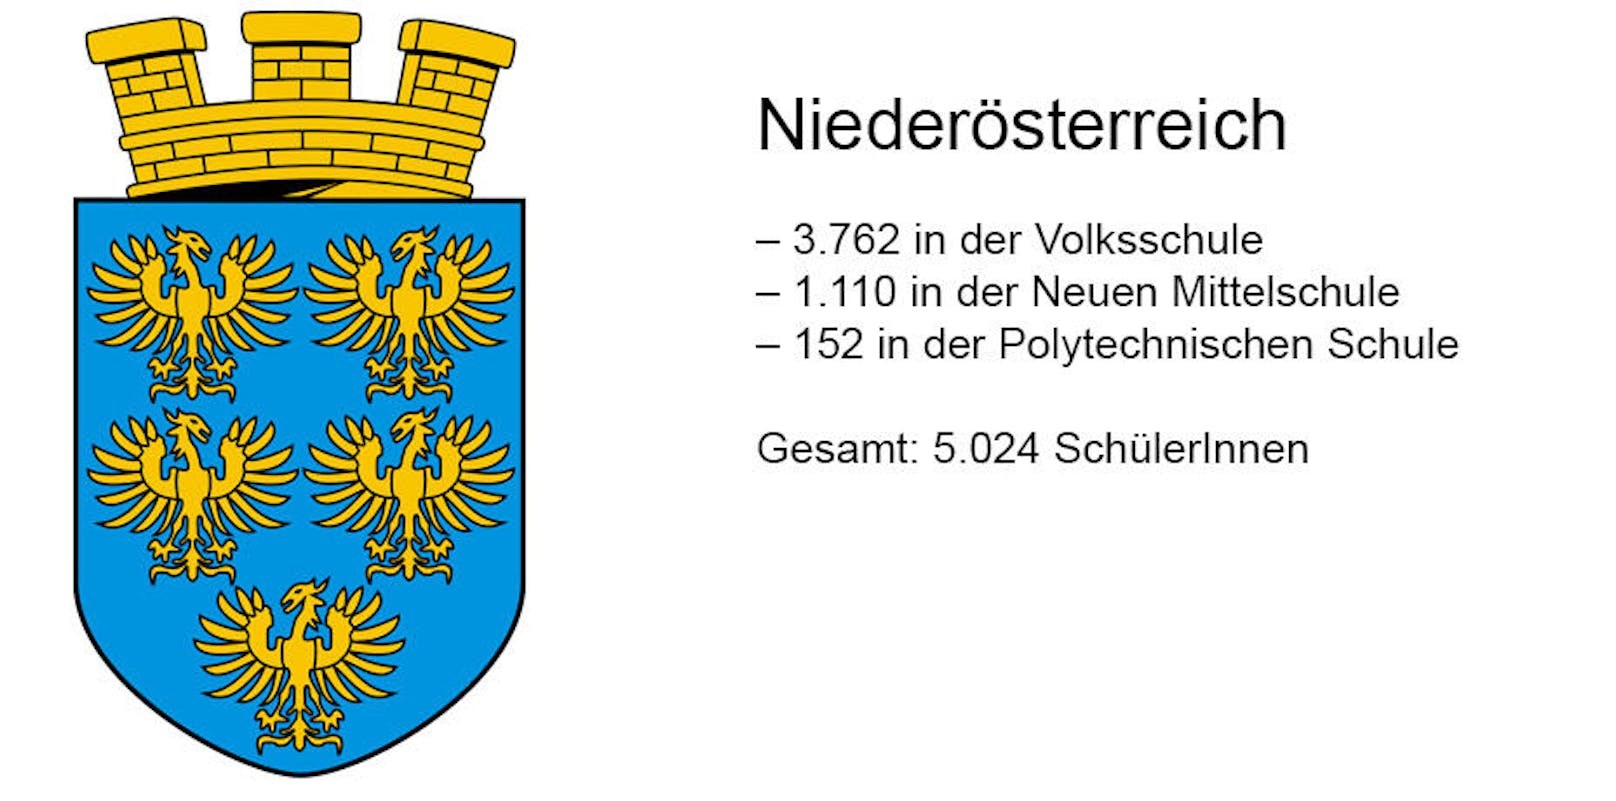 Niederösterreich plant etwa 140 Klassen. Die Erhebungen laufen noch.